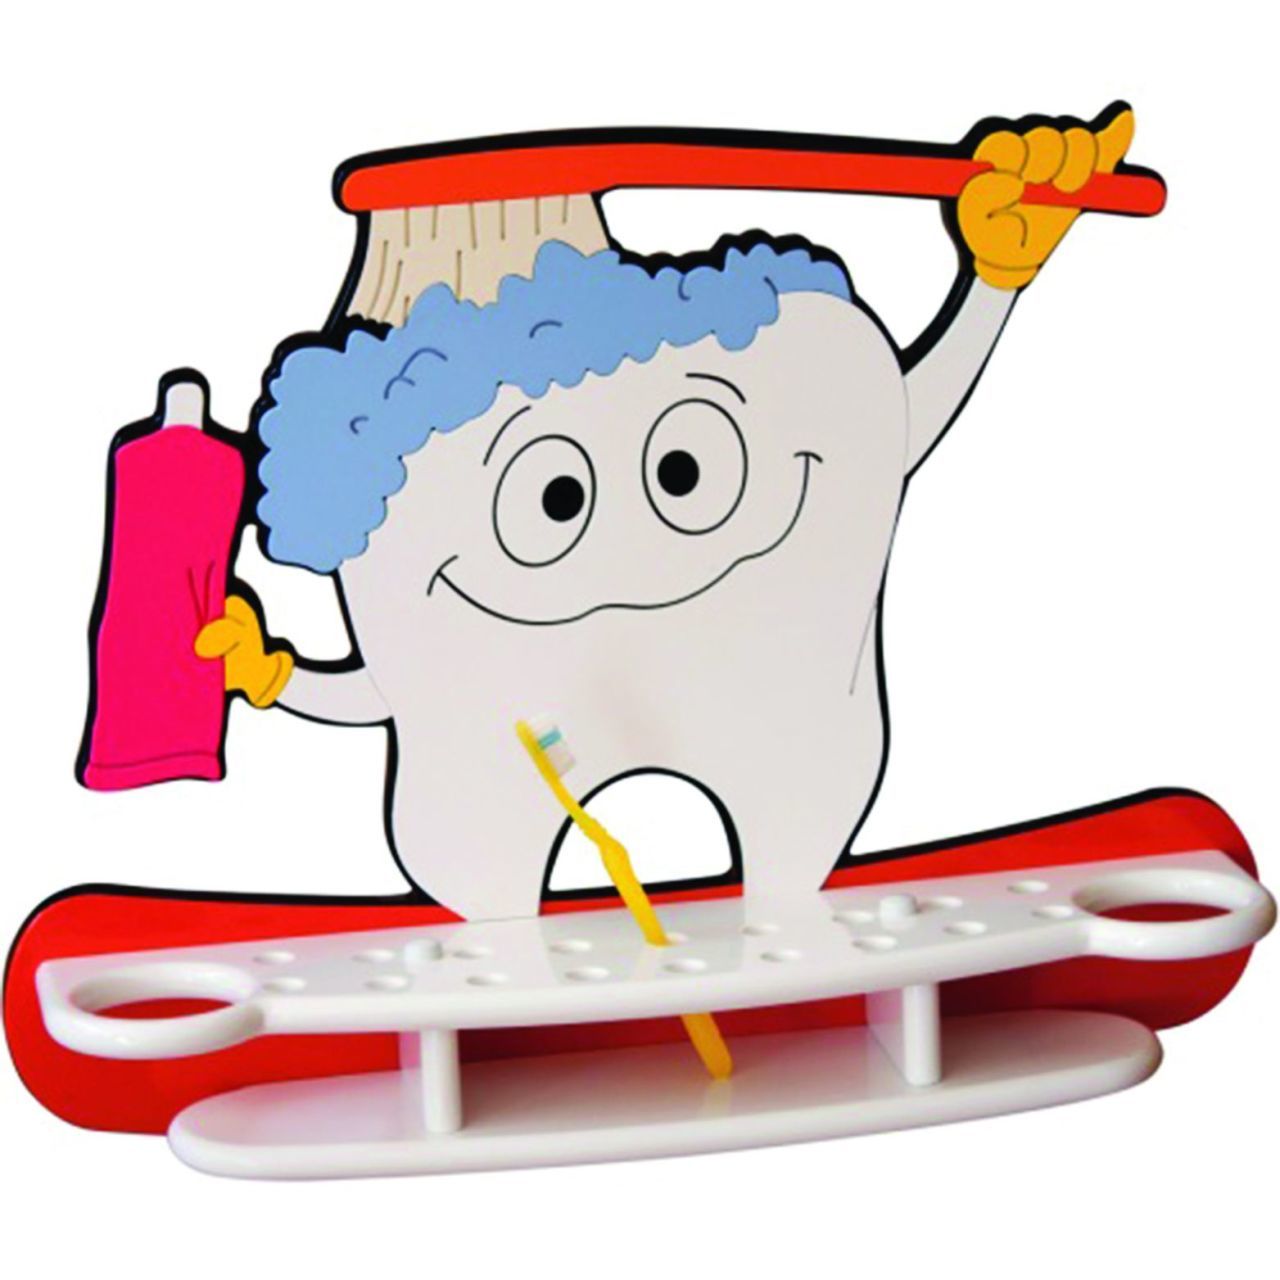 Gülen Diş Fırçalığı - Anaokulu Sınıf Mobilyası